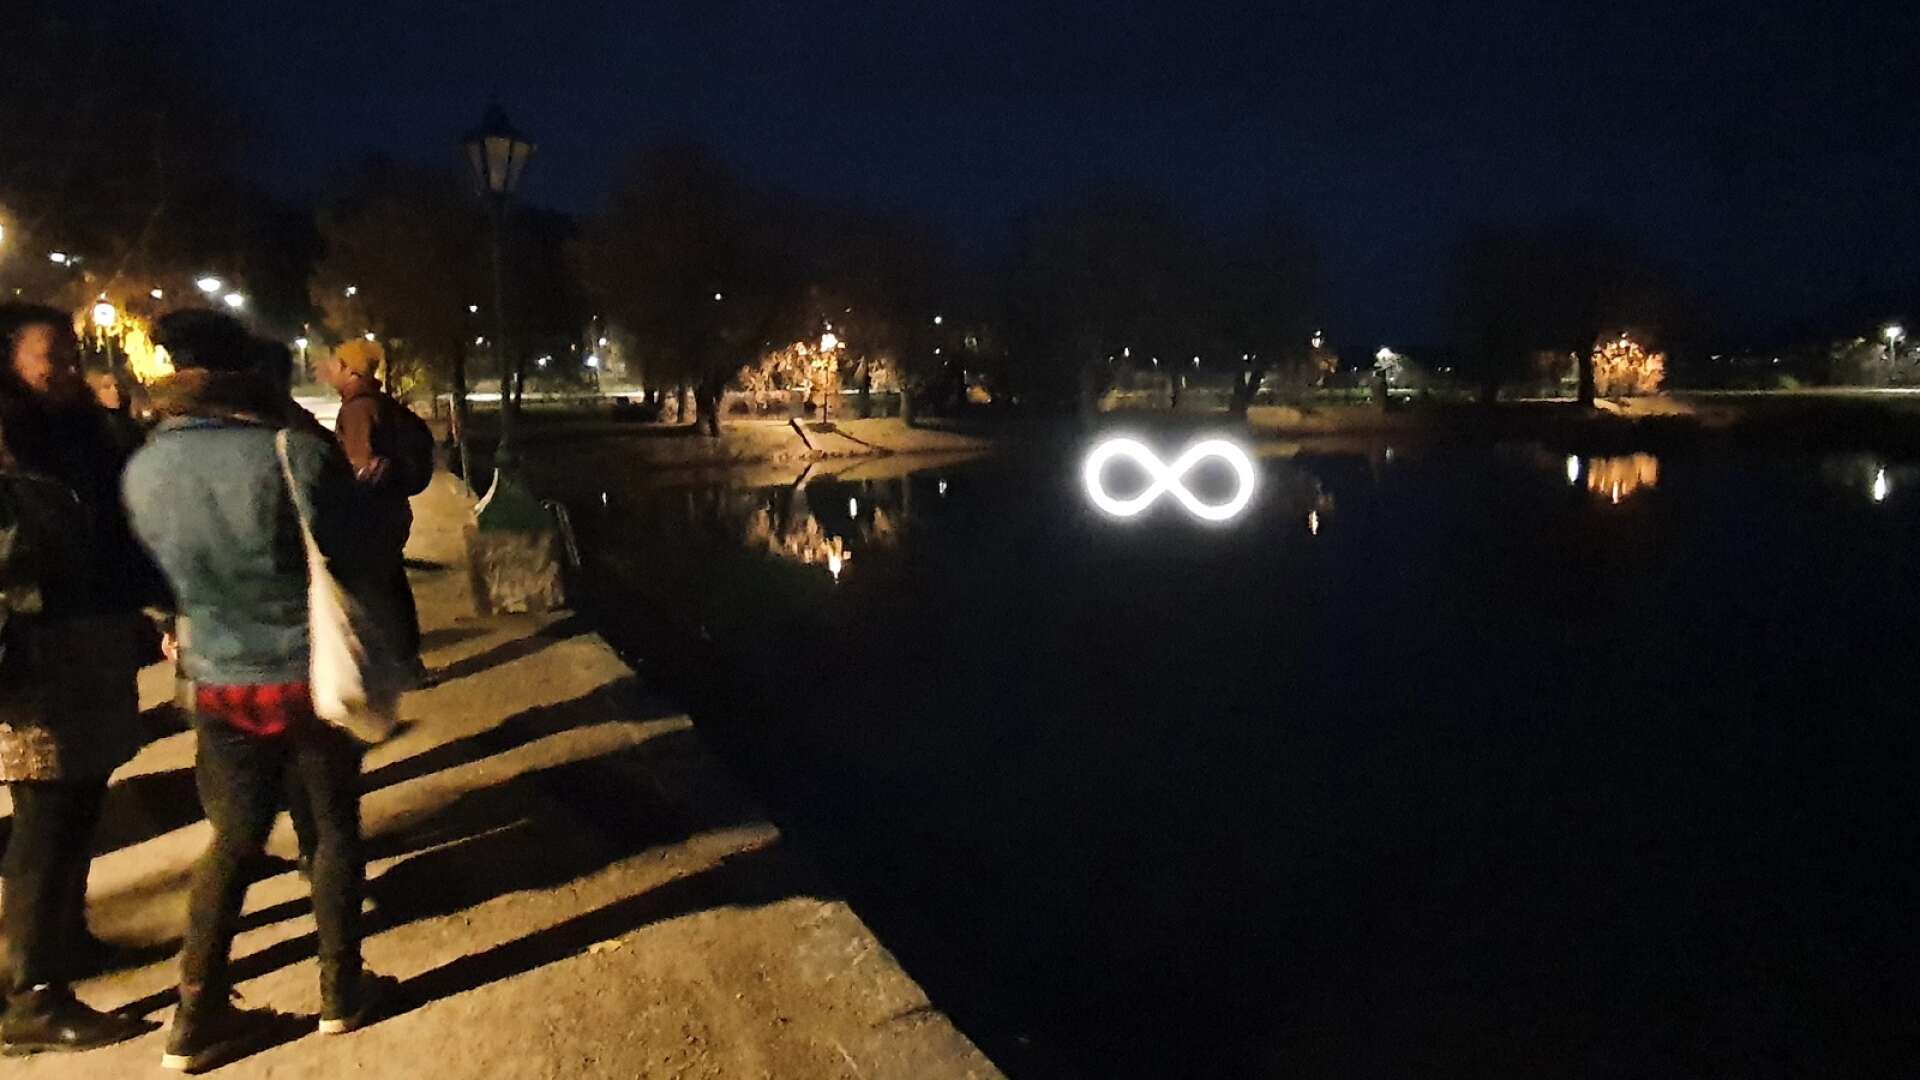 Konstnären Meri Ekola, från Finland, har skapat ljuskonstverket ”Infinity” i Kattviken vid stadsparken.